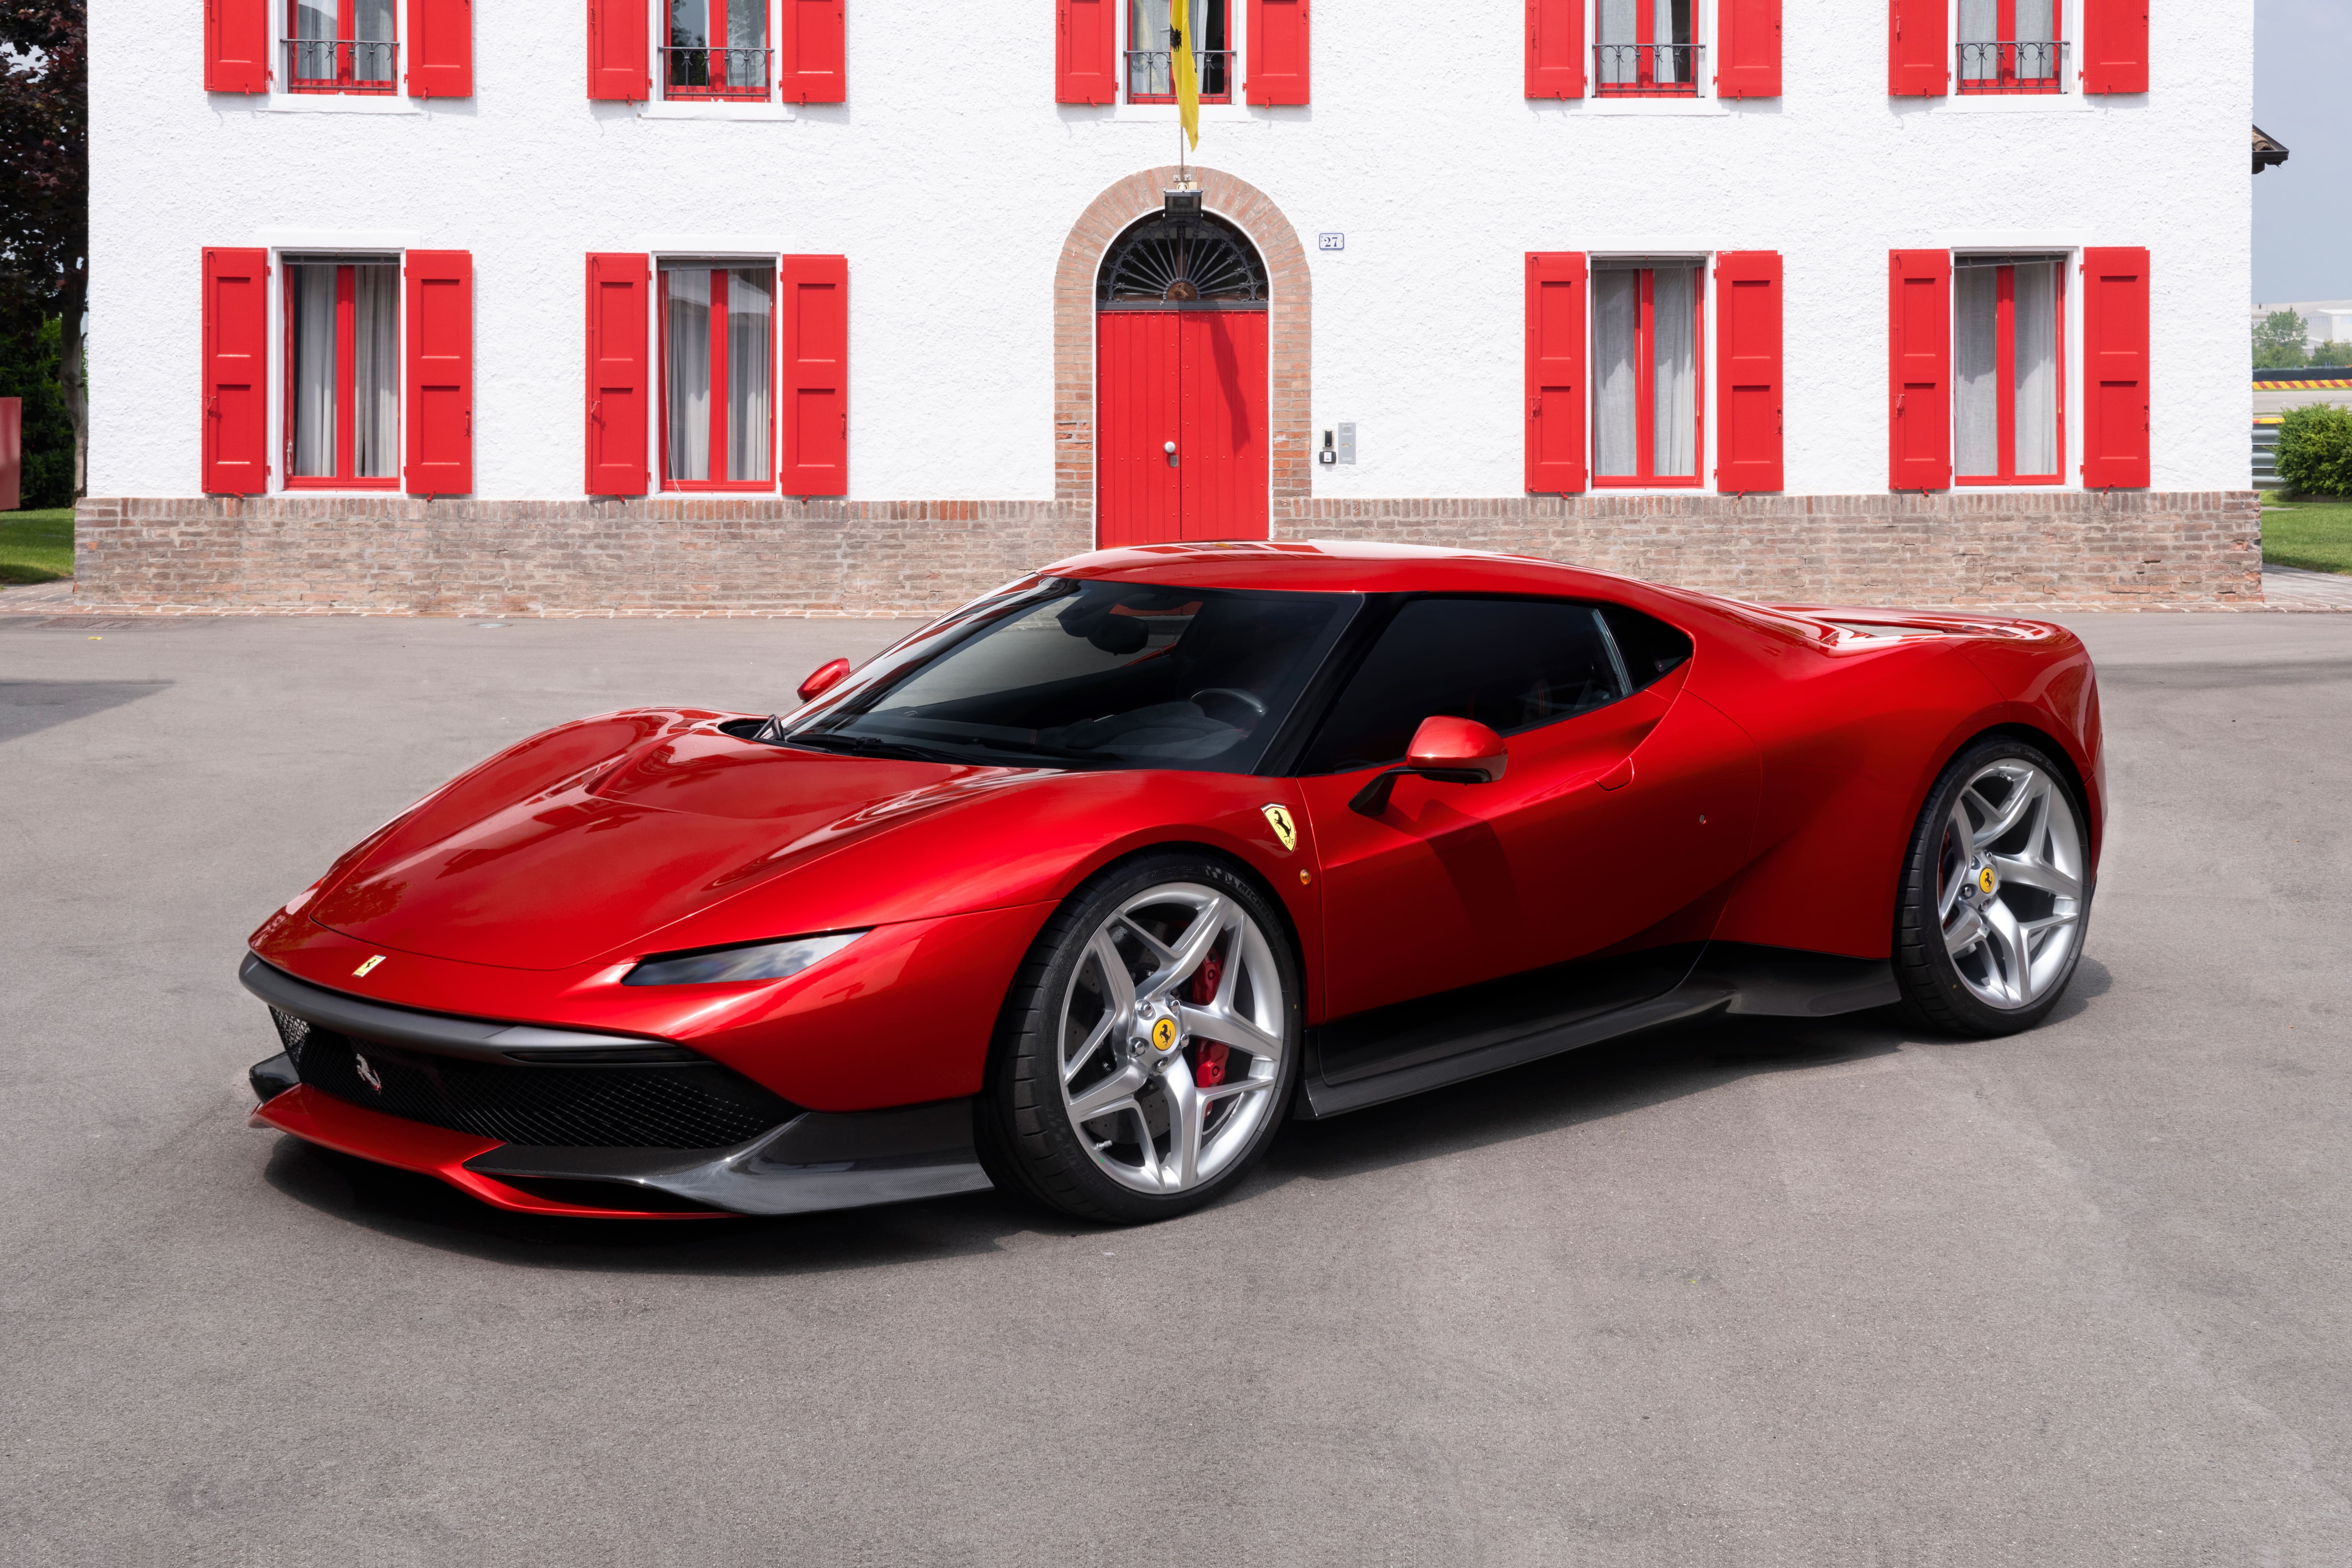 Ferrari Design Center Creates One-Off Ferrari SP38